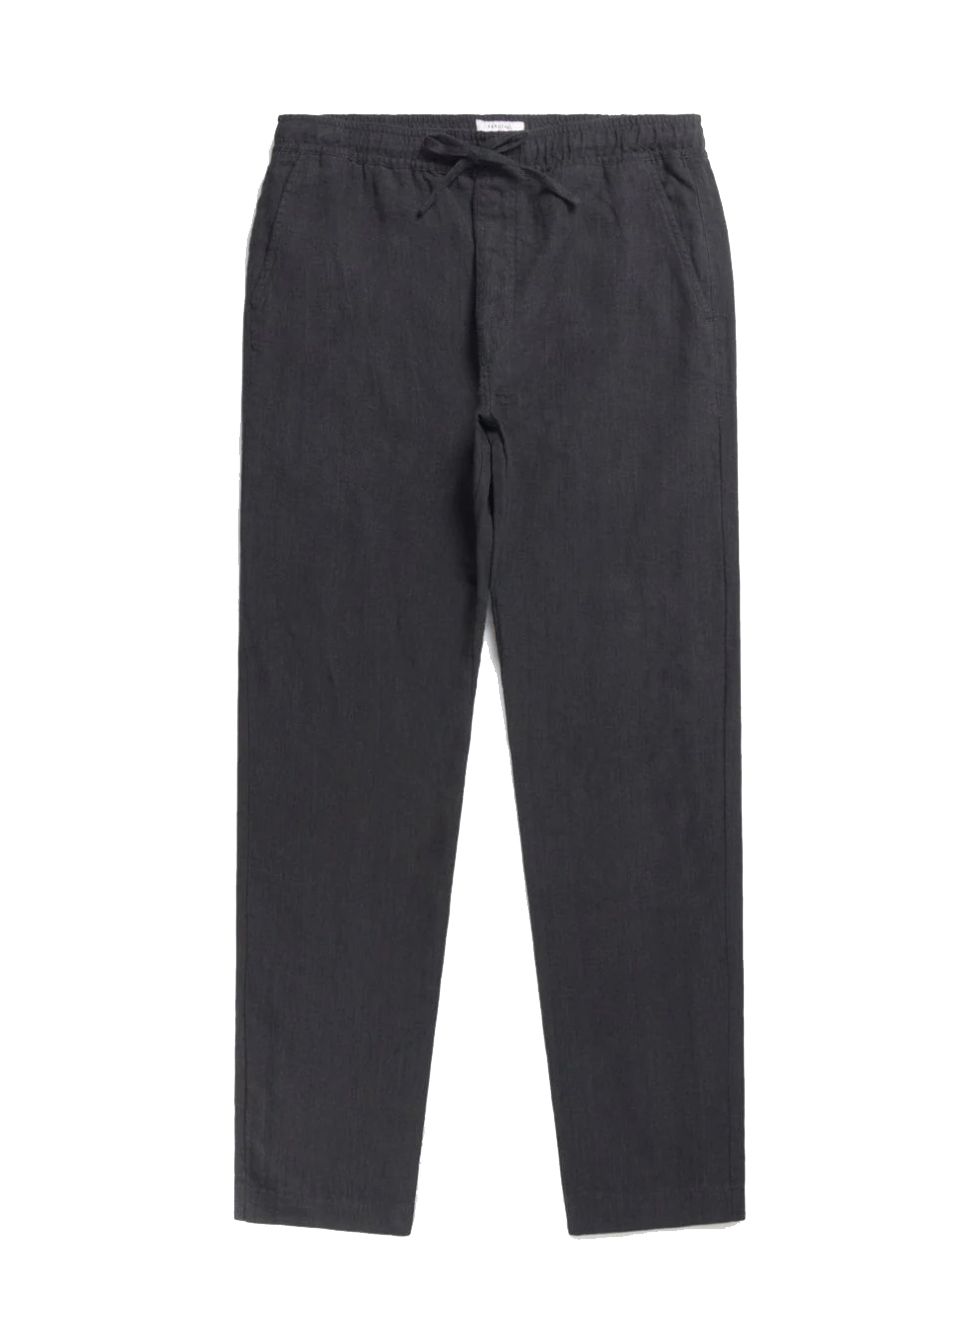 Shop Percival Men's Trousers up to 75% Off | DealDoodle